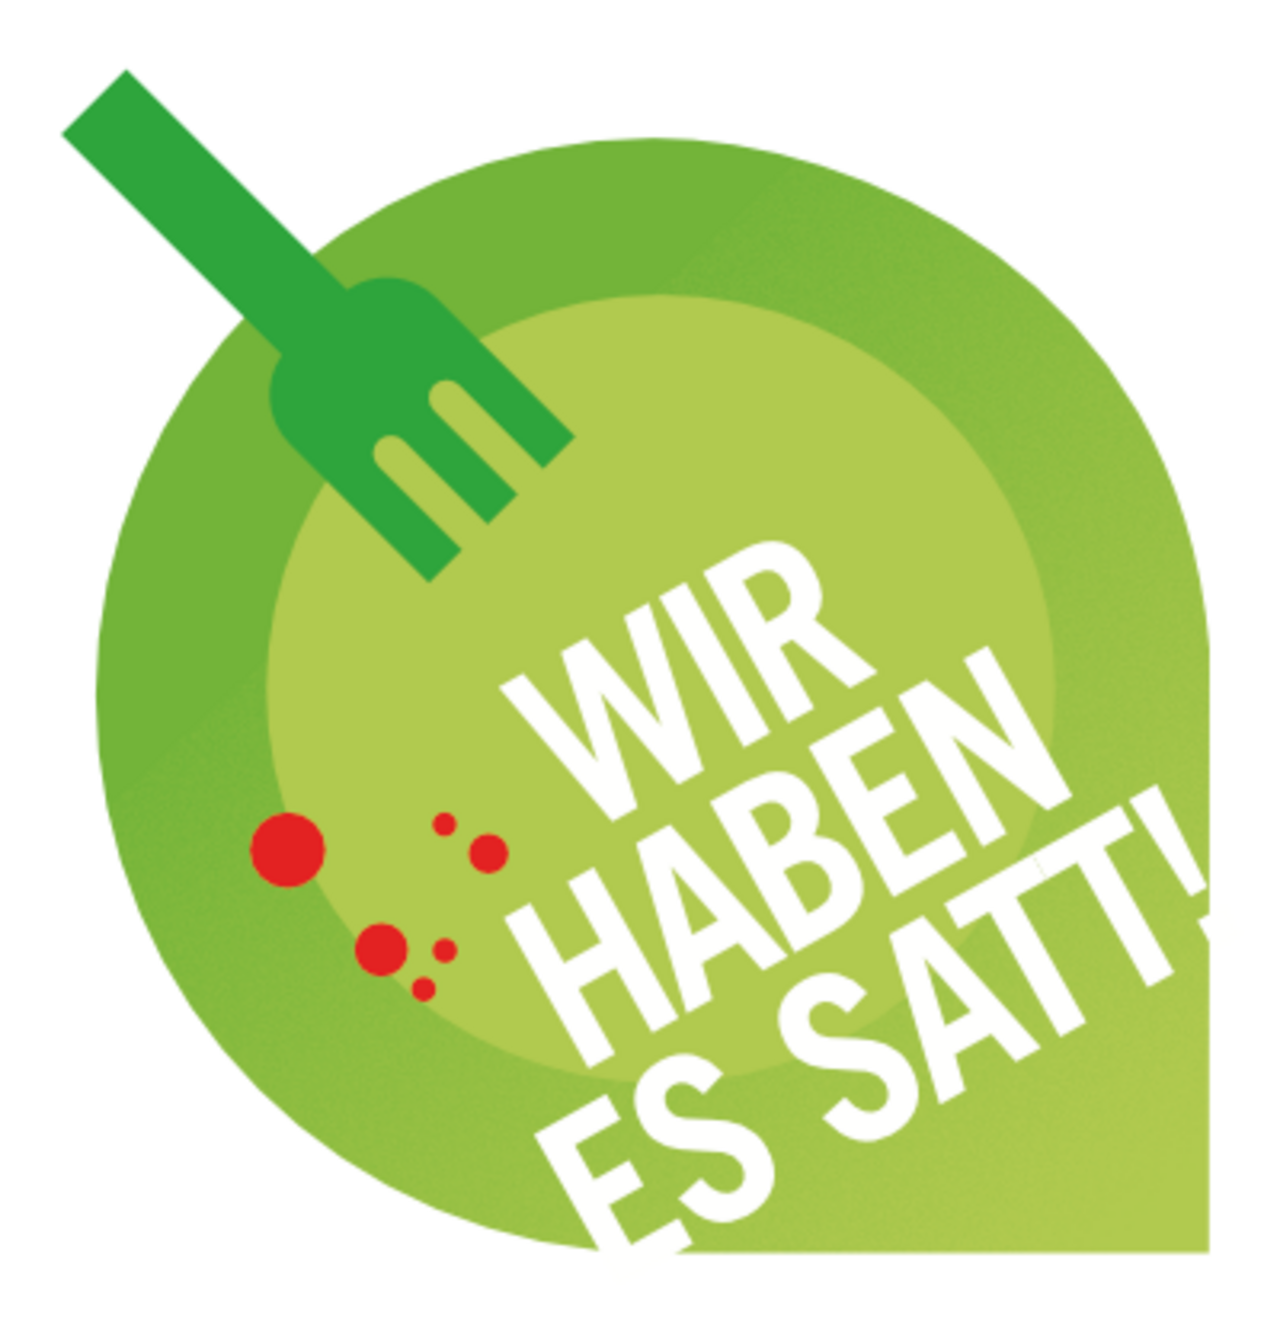 Das "Wir haben es satt!"-Logo zeigt einen Grünen Teller mit Gabel und der Aufschrift "Wir haben es satt!"